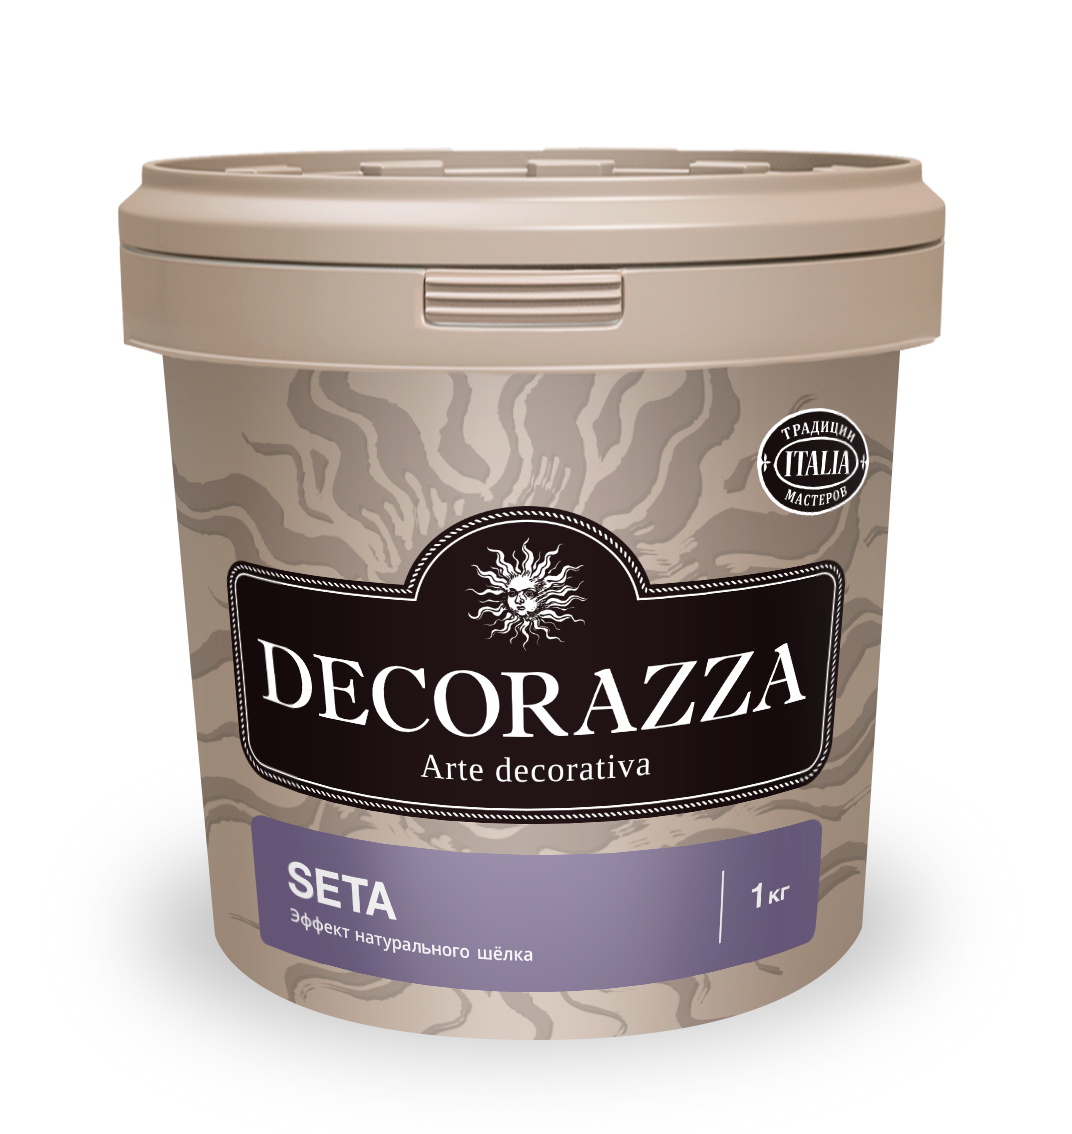 Декоративная штукатурка эффект натурального шелка Decorazza Seta, ST 800, золото, 1 кг декоративная металлизированная краска decorazza